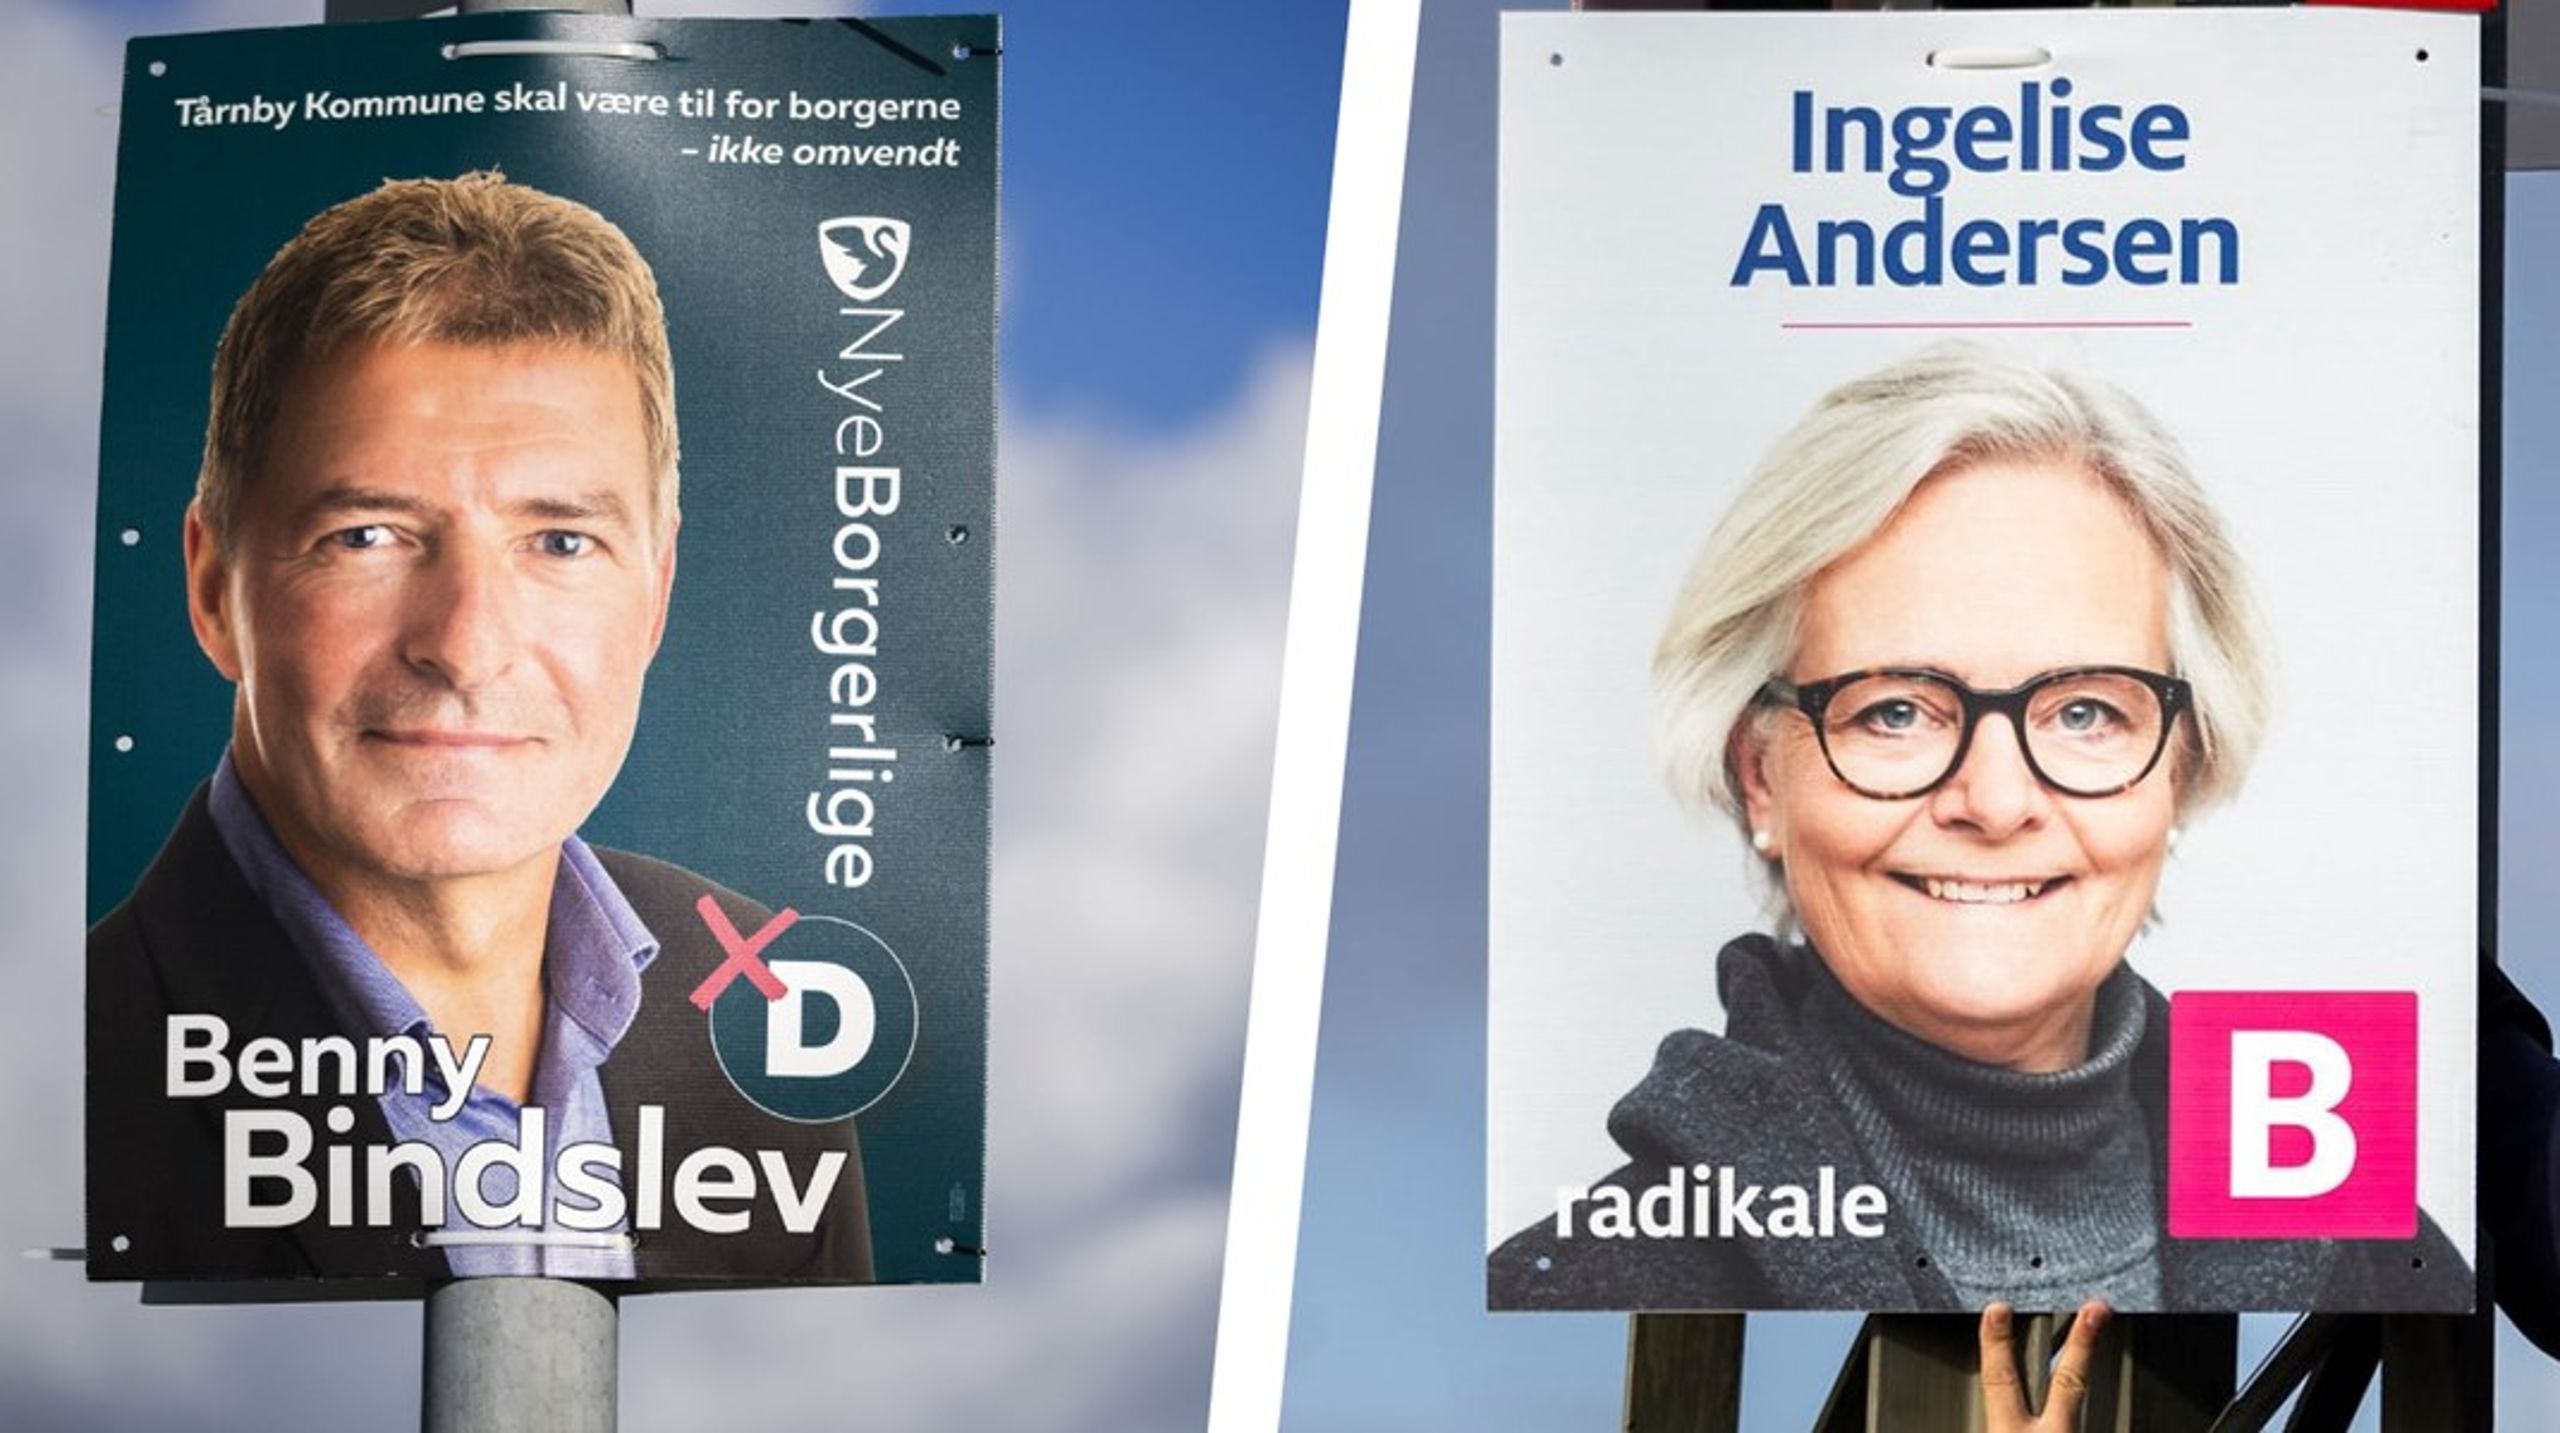 I Tårnby Kommune indgår Nye Borgerlige i valgforbund med Radikale. Dermed kan en stemme på Benny Bindslev eller hans partifæller hos Nye Borgerlige ende som støtte til den Radikale spidskandidat Ingelise Andersens parti. Og omvendt.